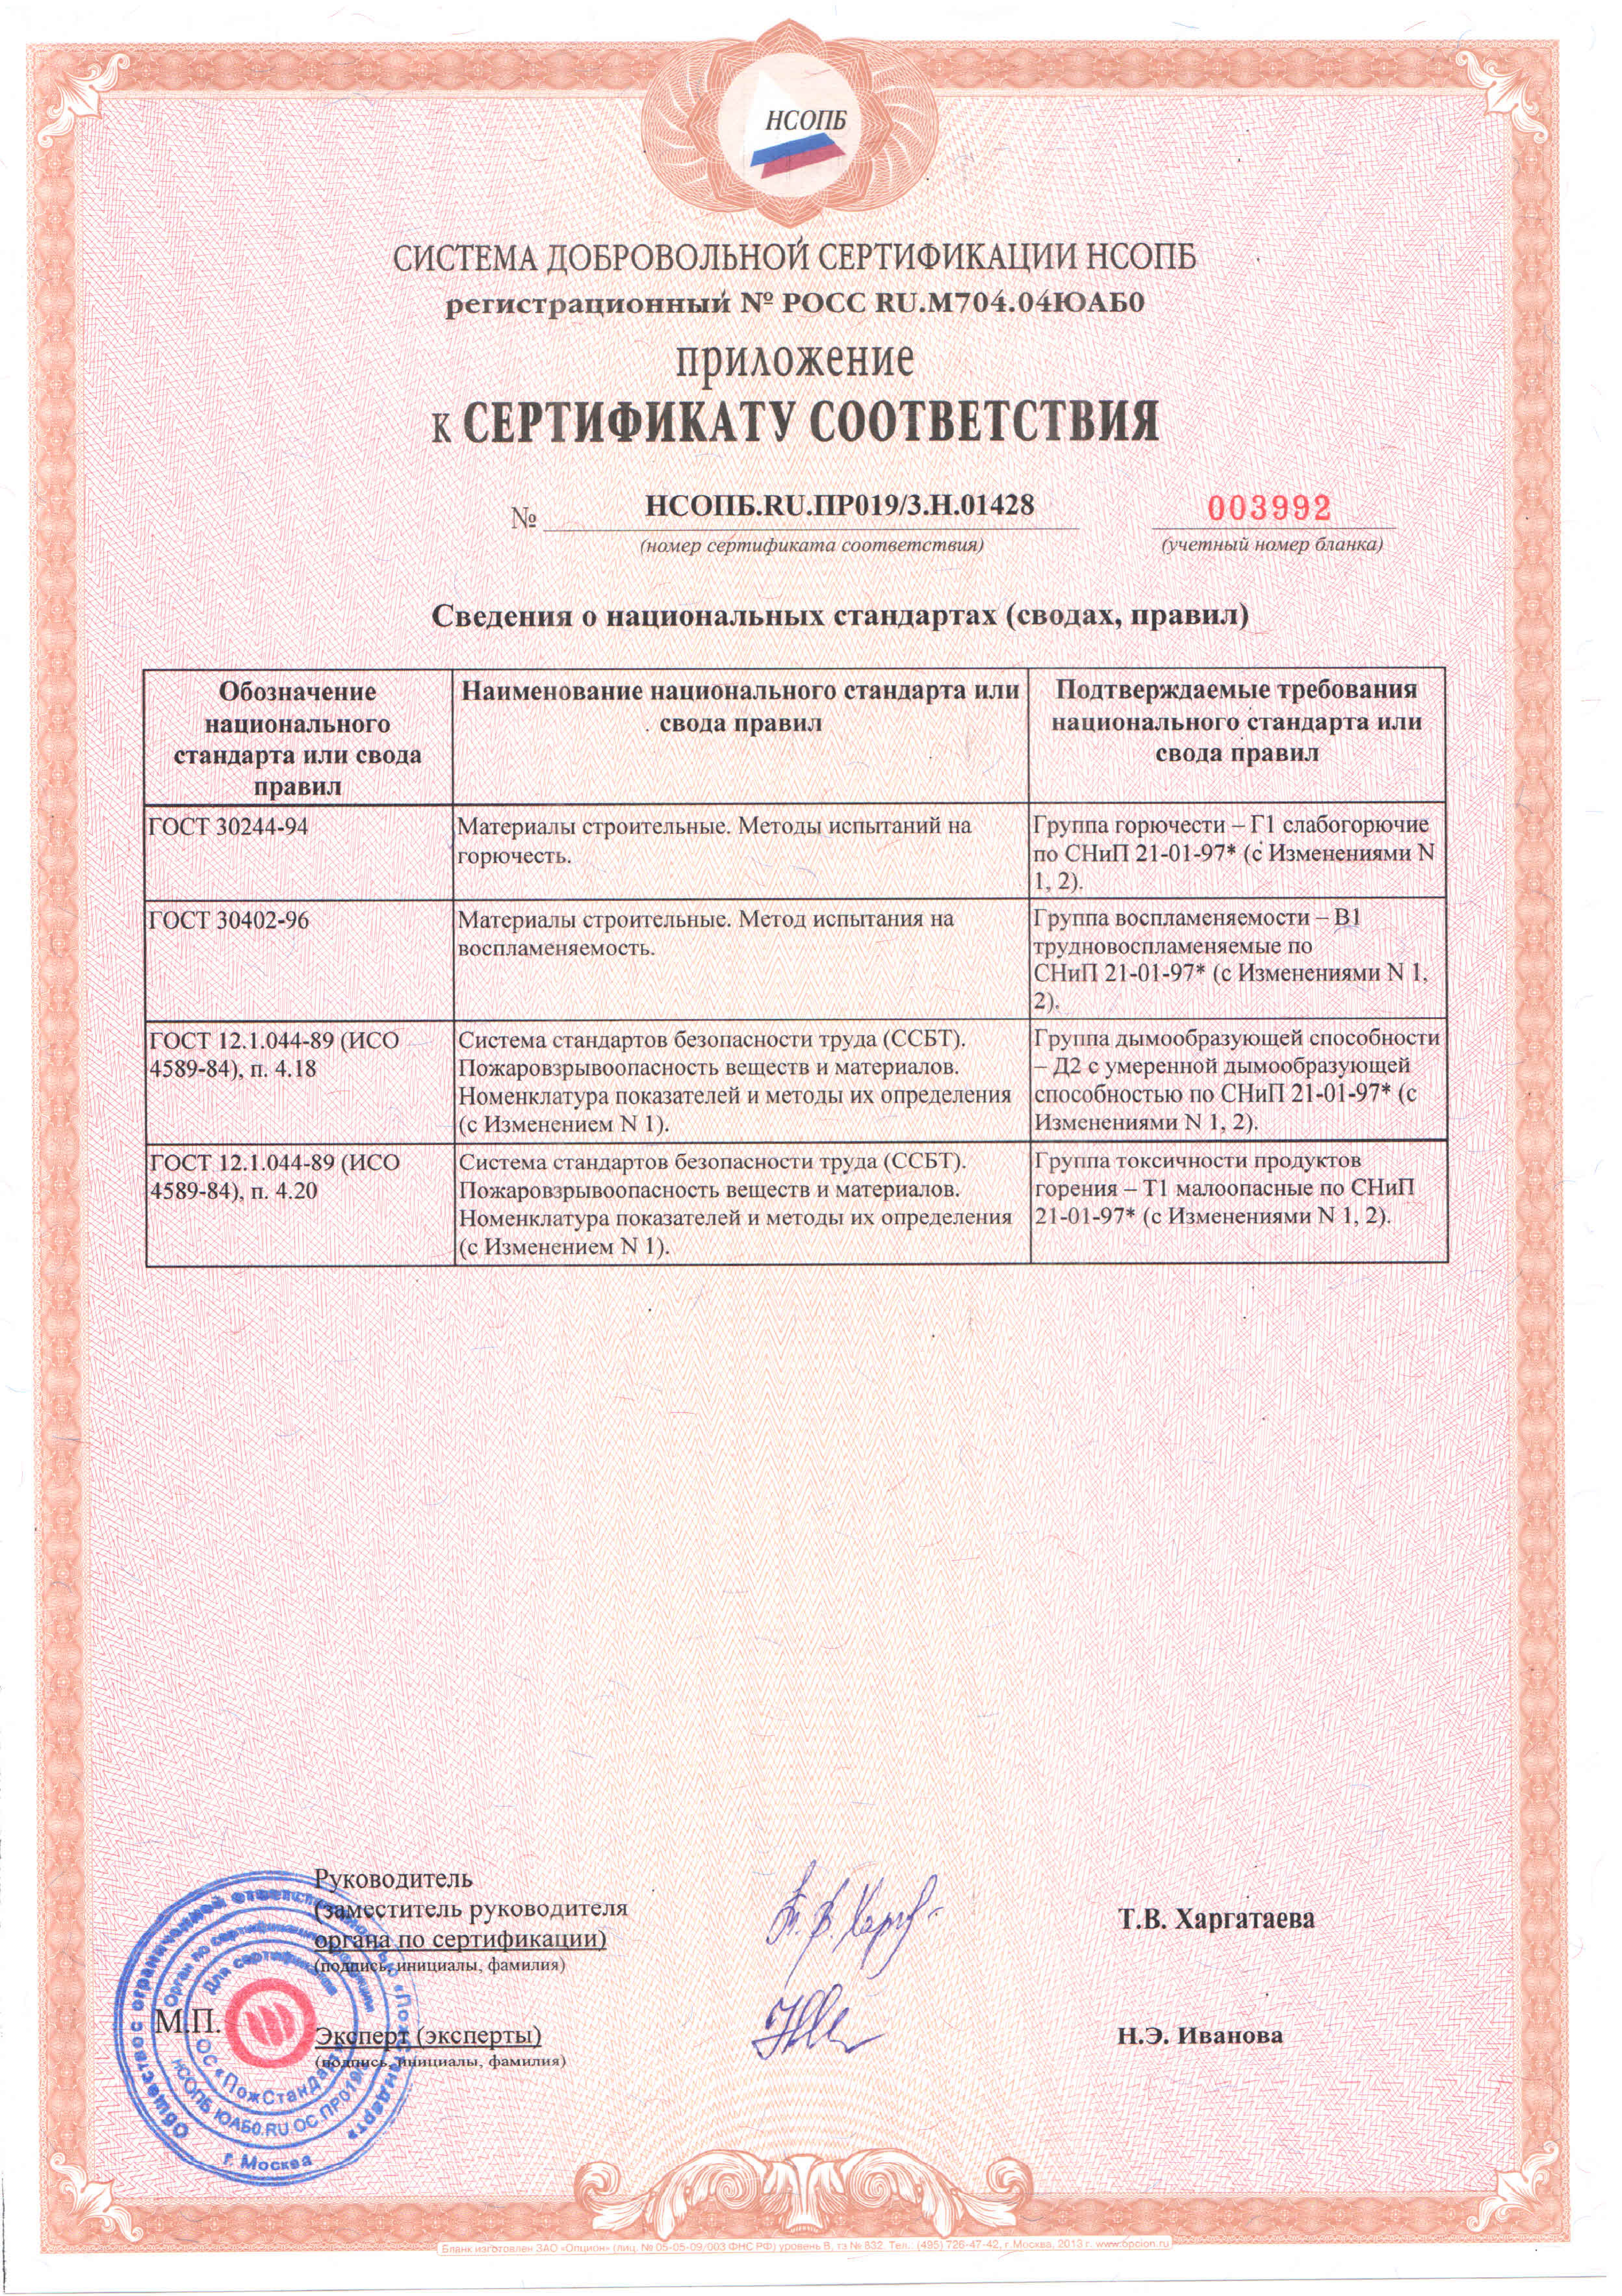 Сертификат соответствия ФА по ТРиМ, Сертификат соответствия НСОПБ, паспорт изделия